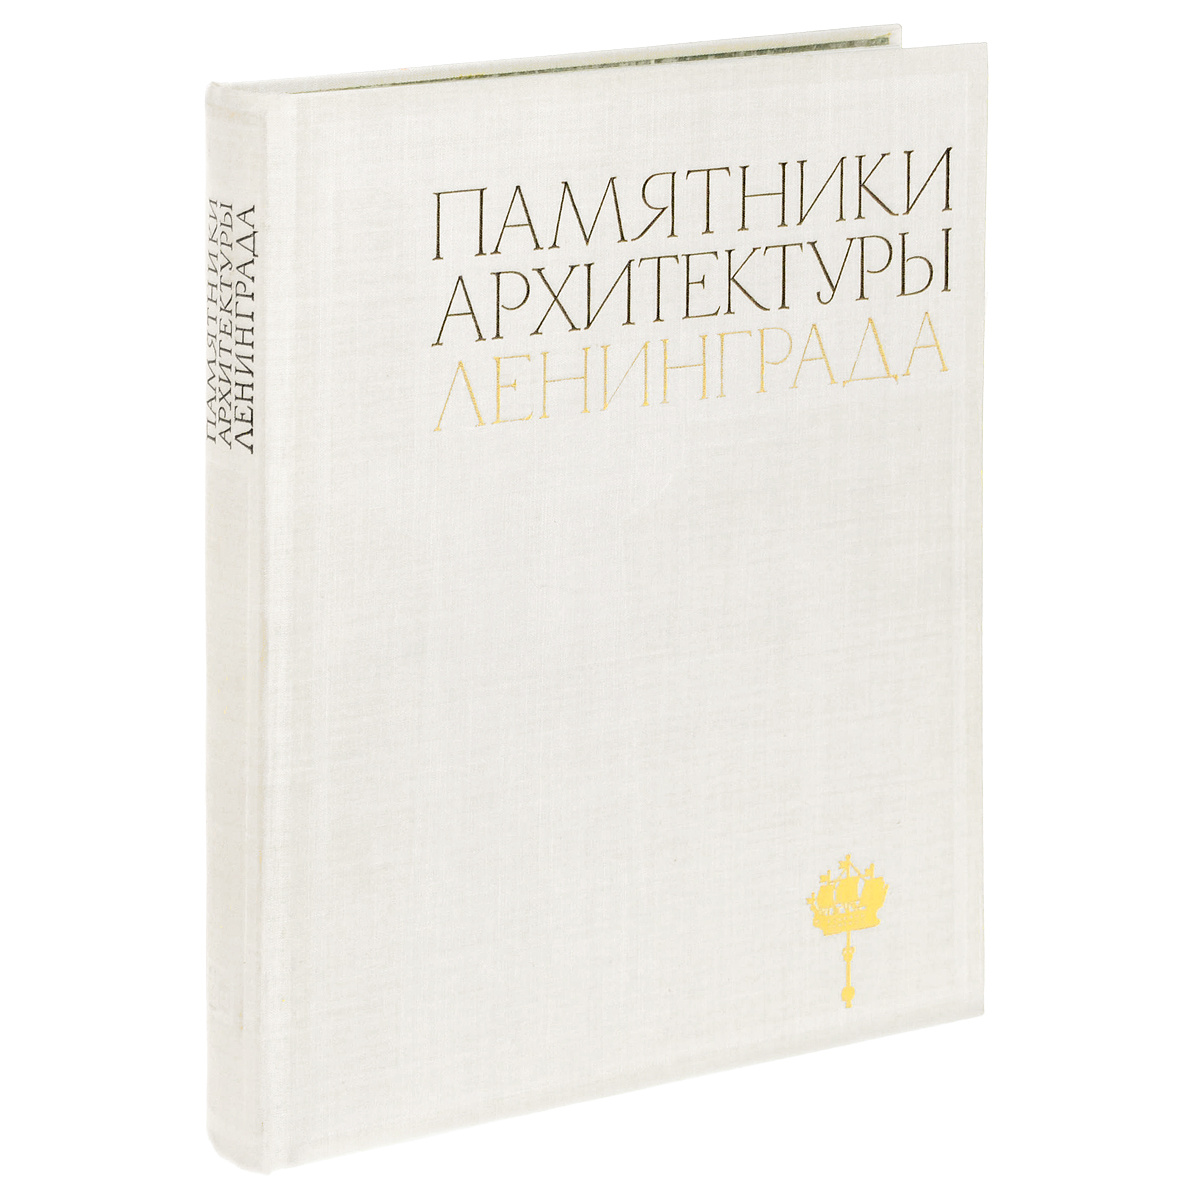 Книга памятники архитектуры пригородов ленинграда